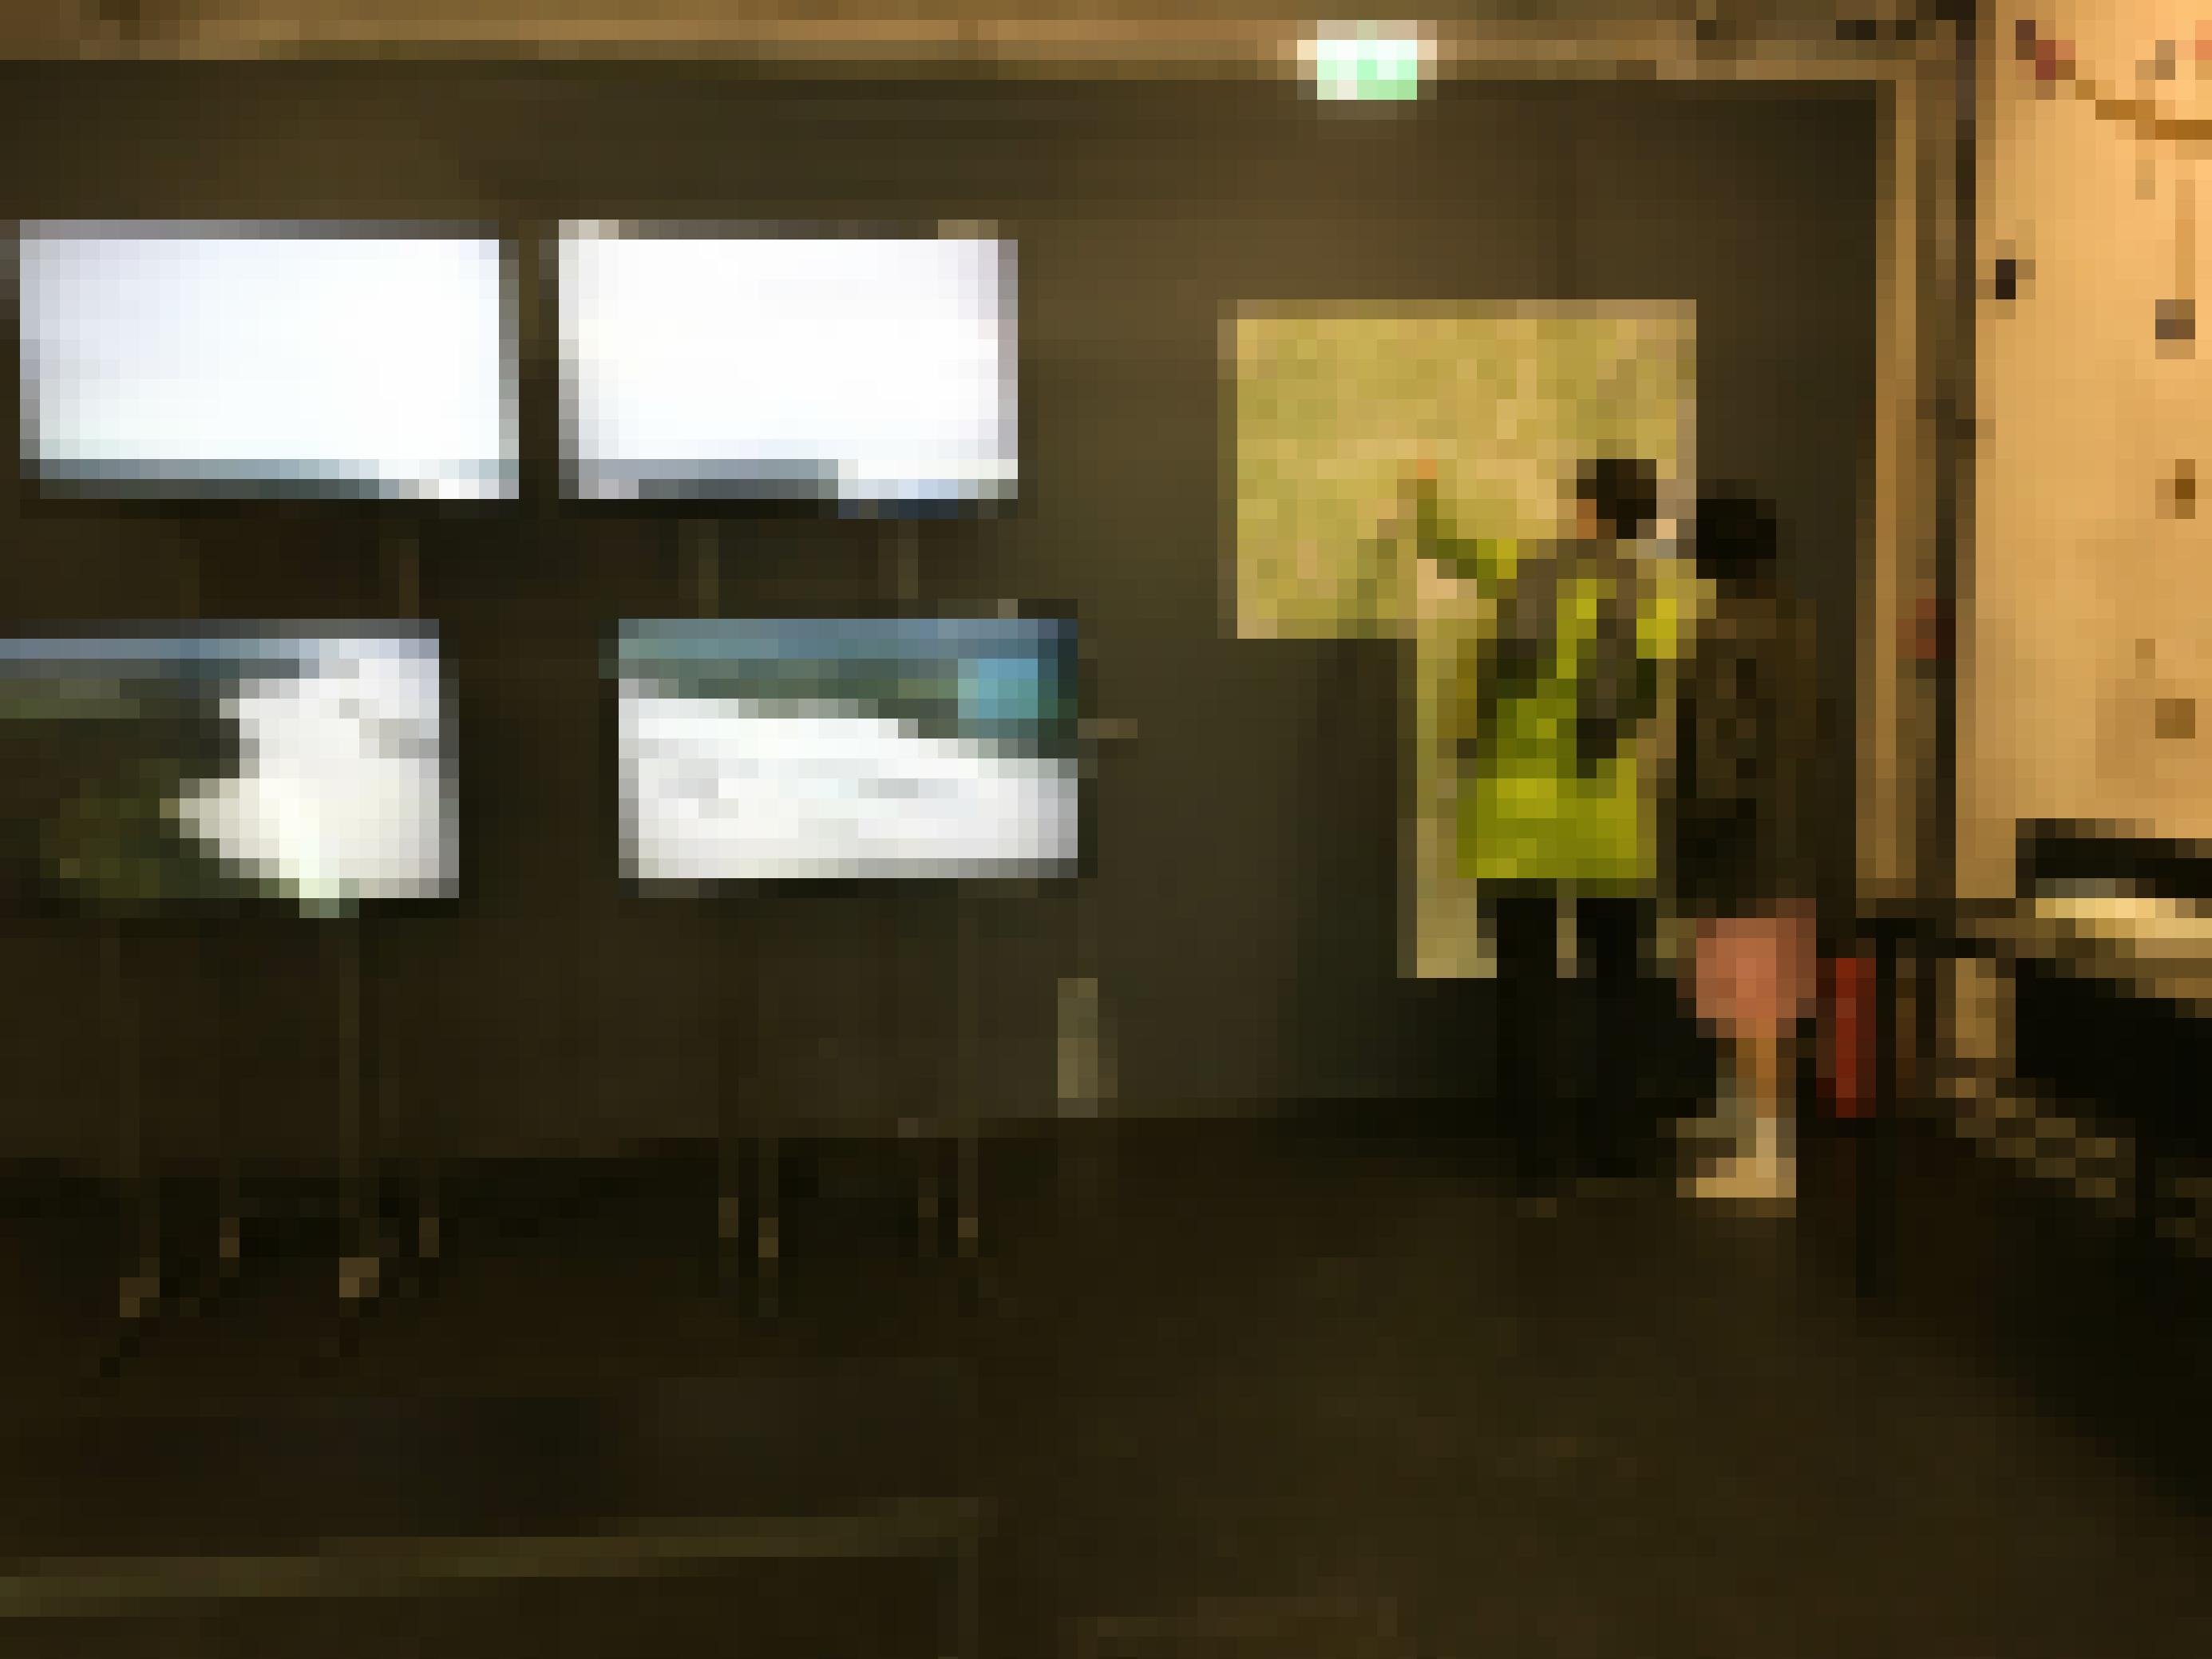 Bildschirme in Ausstellung, Landkarte, zwei Besucherinnen.